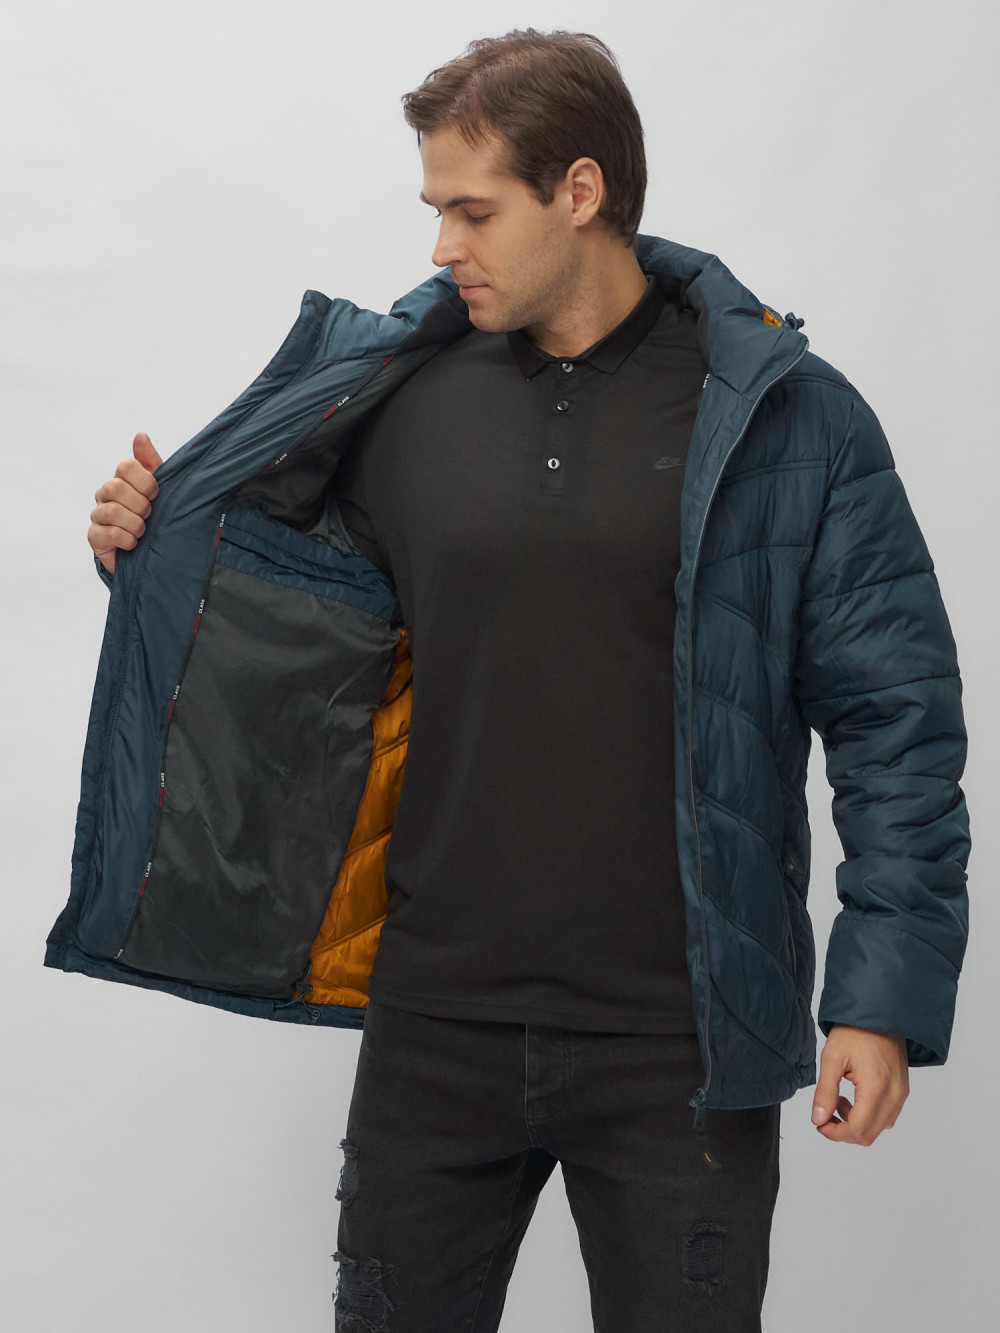 Купить куртку мужскую спортивную оптом от производителя недорого в Москве 62176TS 1